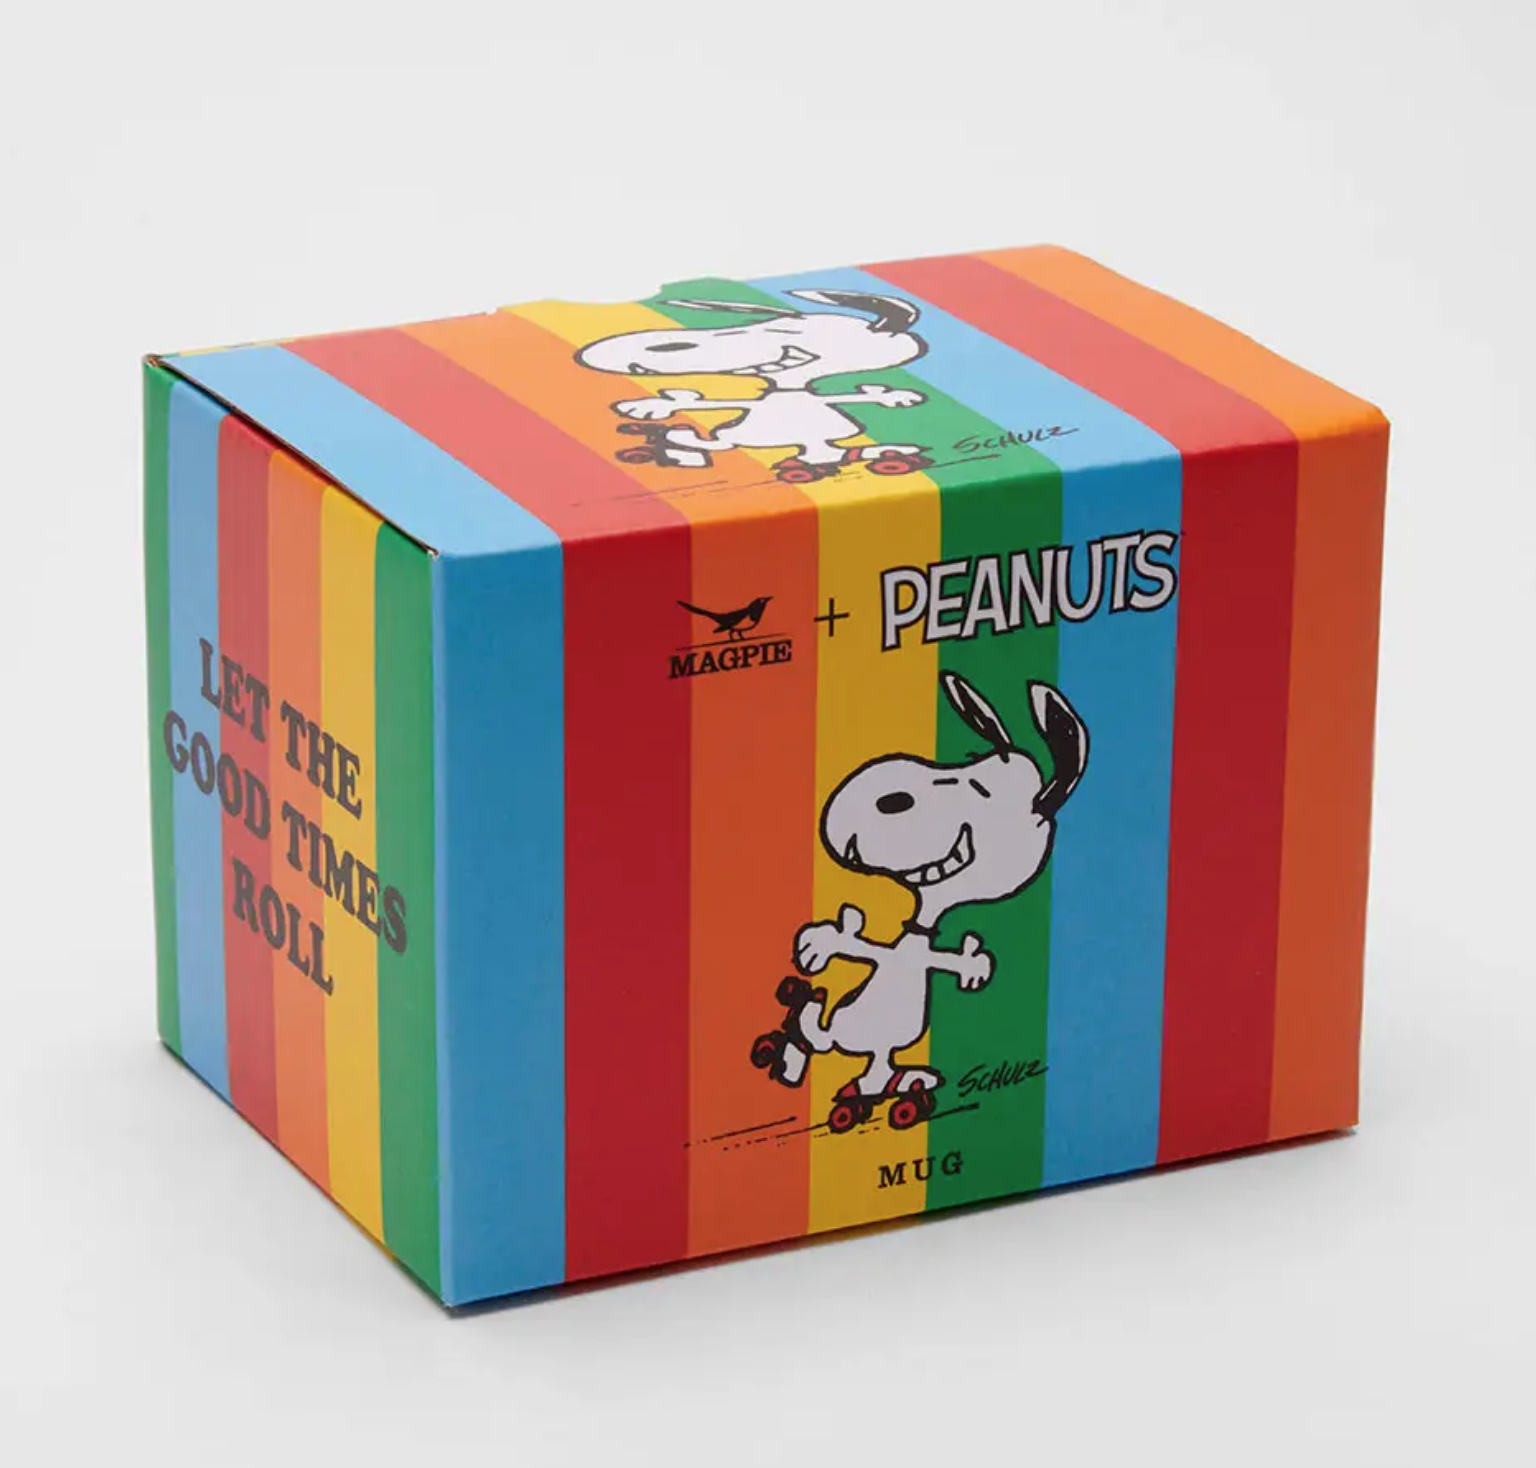 Peanuts Good Times Mug x Magpie